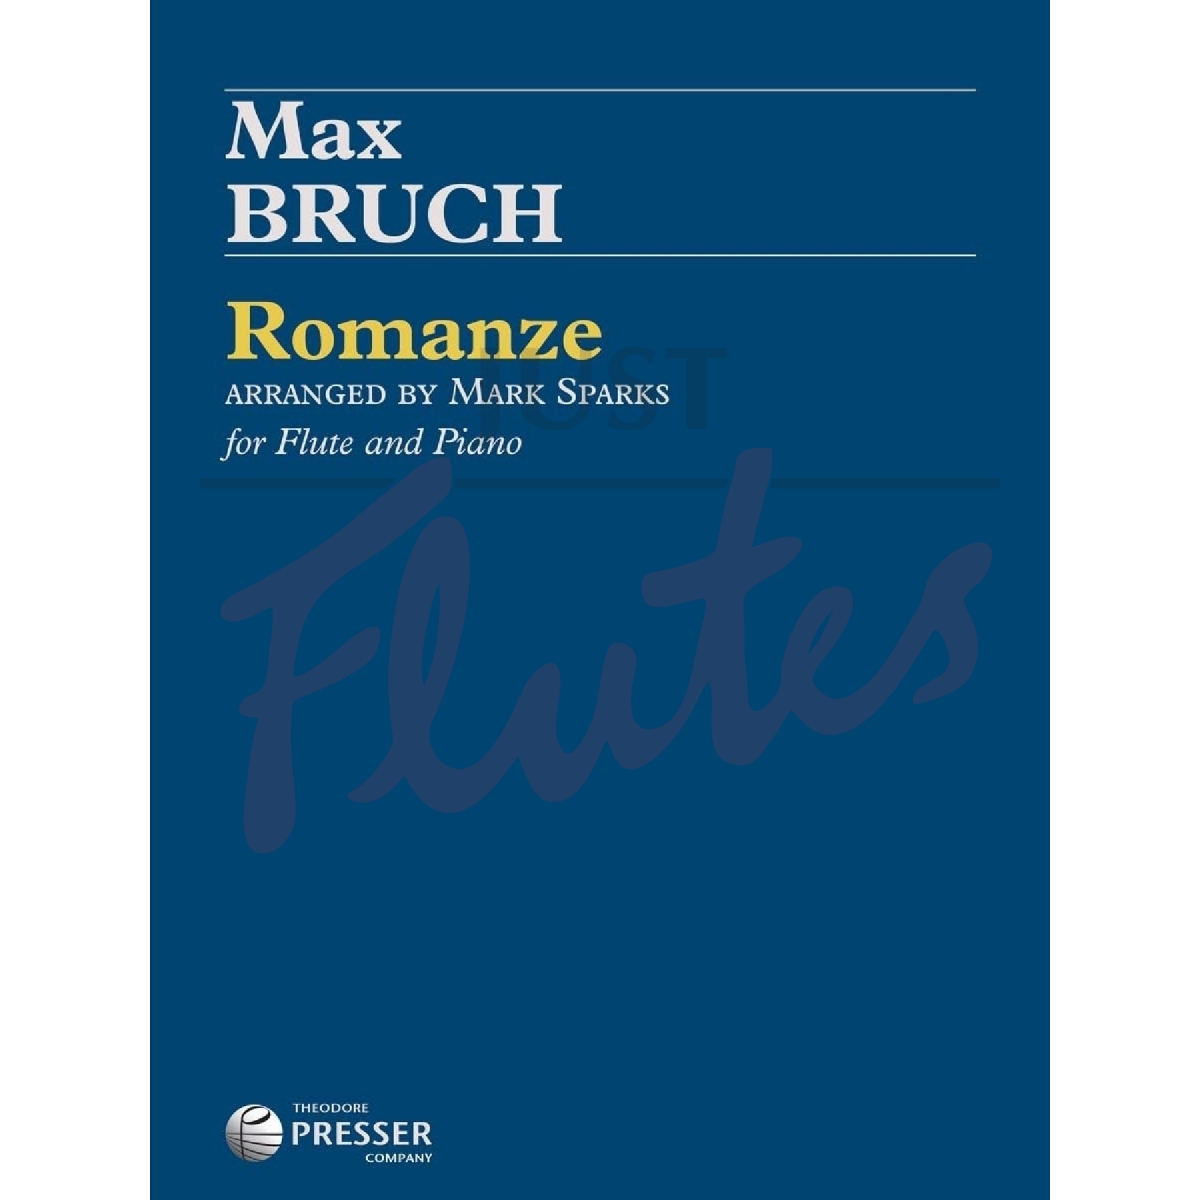 Romanze for Flute and Piano